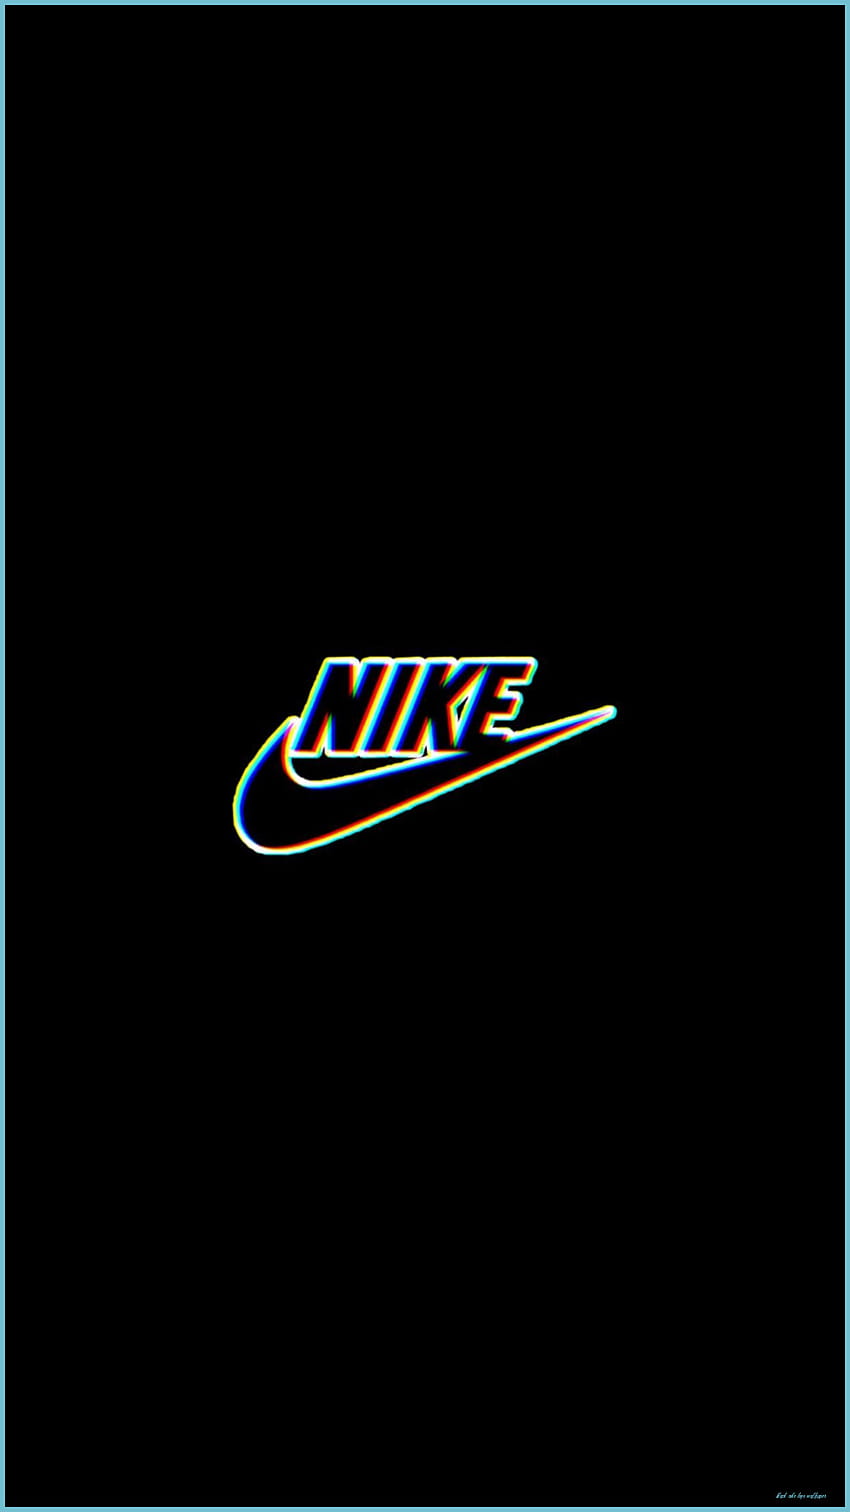 Black Nike Logo: Logo Nike là biểu tượng của một thương hiệu đi đầu trong ngành sản xuất giày và quần áo thể thao. Biểu tượng quả bóng chuyền liên tục đưa ra thông điệp về sự năng động, sức mạnh và đỉnh cao. Hãy xem ảnh liên quan đến logo Nike để tìm hiểu thêm về thương hiệu cùng sở thích.